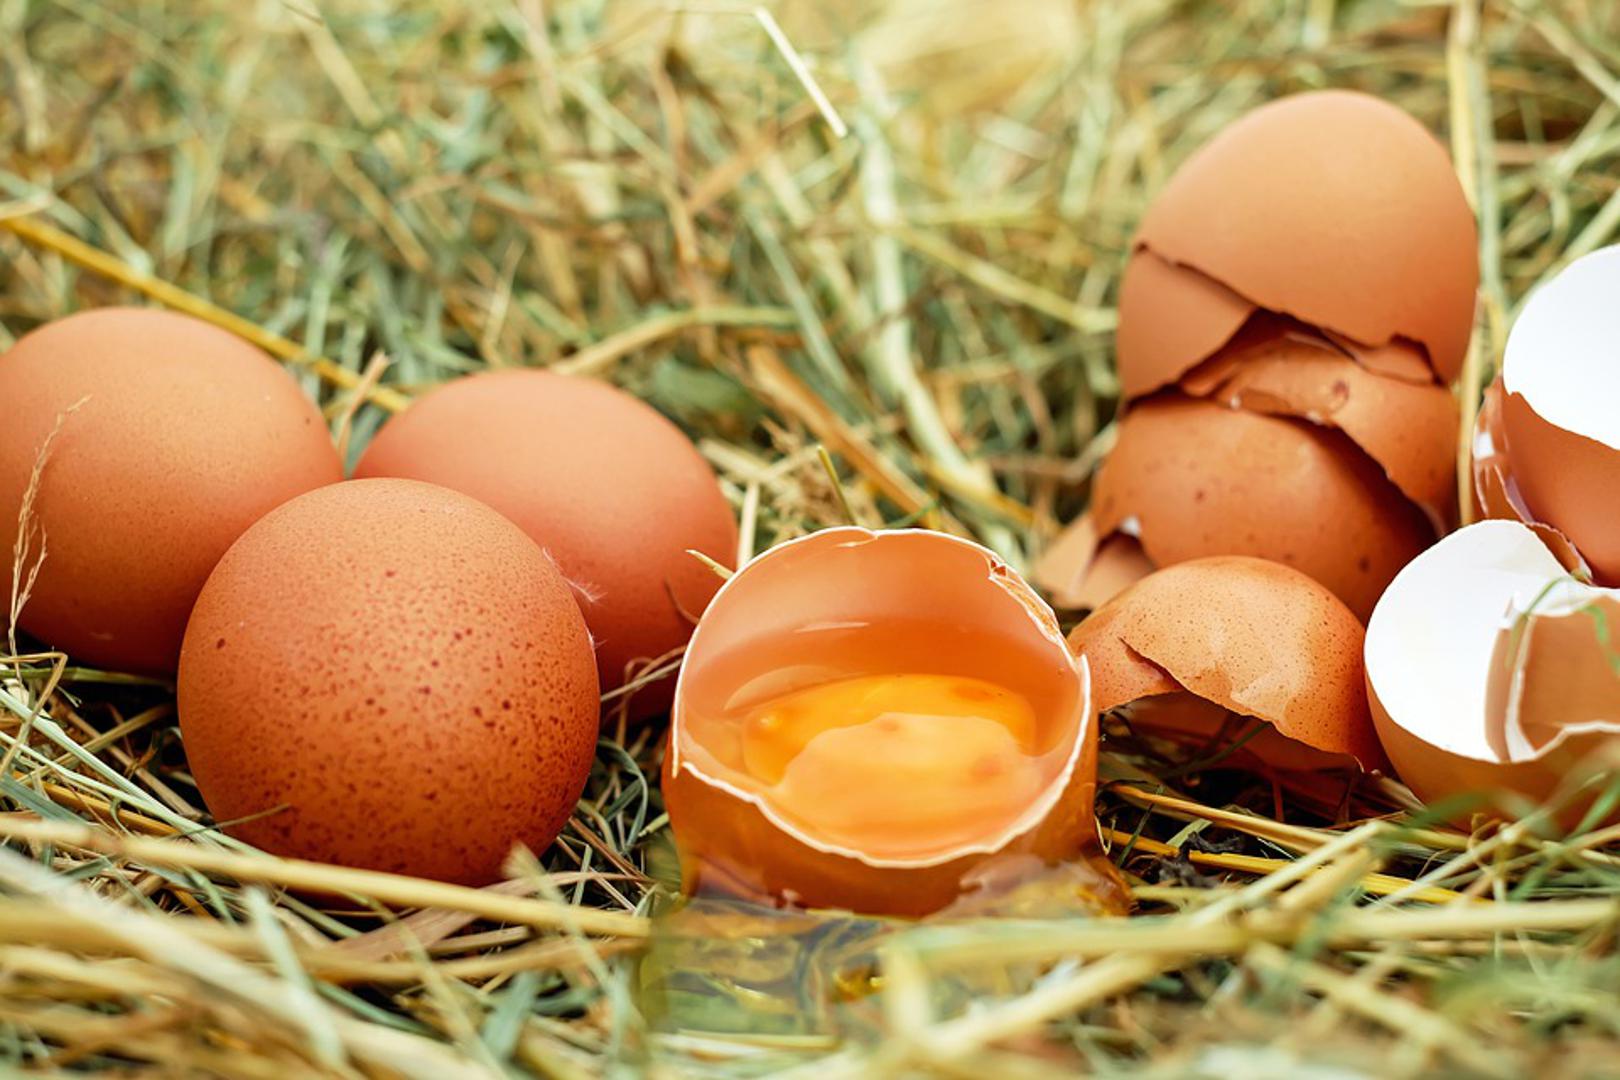 4. Nemojte dodavati jaja u kipuću vodu - koristite mlaku kako bi imali više kontrole nad ravnomjernim kuhanjem

